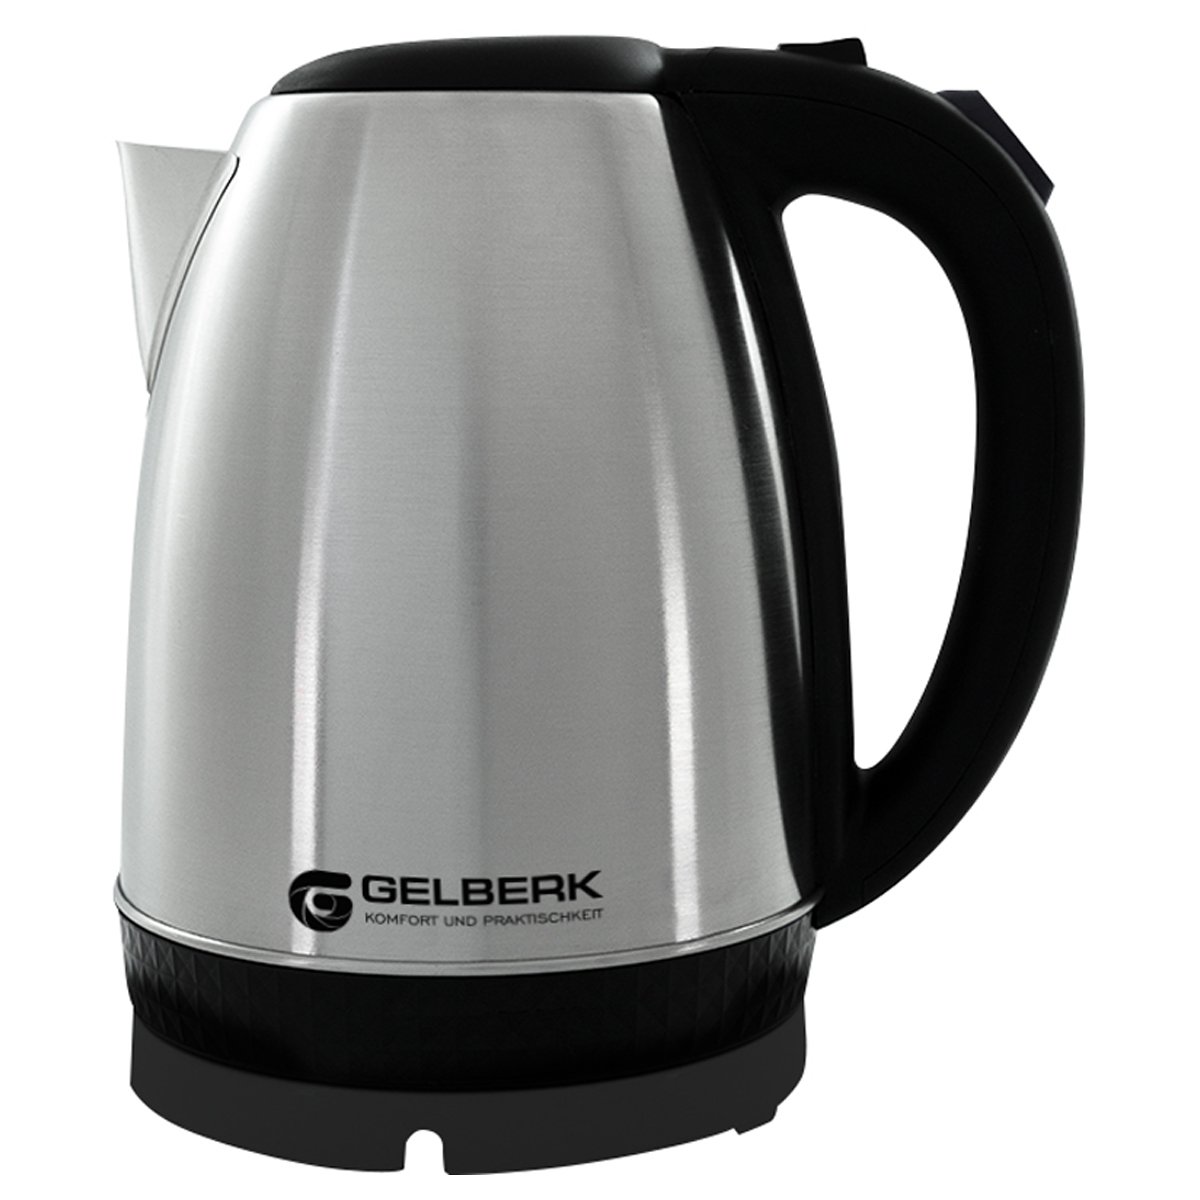 Чайник электрический Gelberk GL-451, 1,8л, 1500Вт, нержавеющая сталь, черный